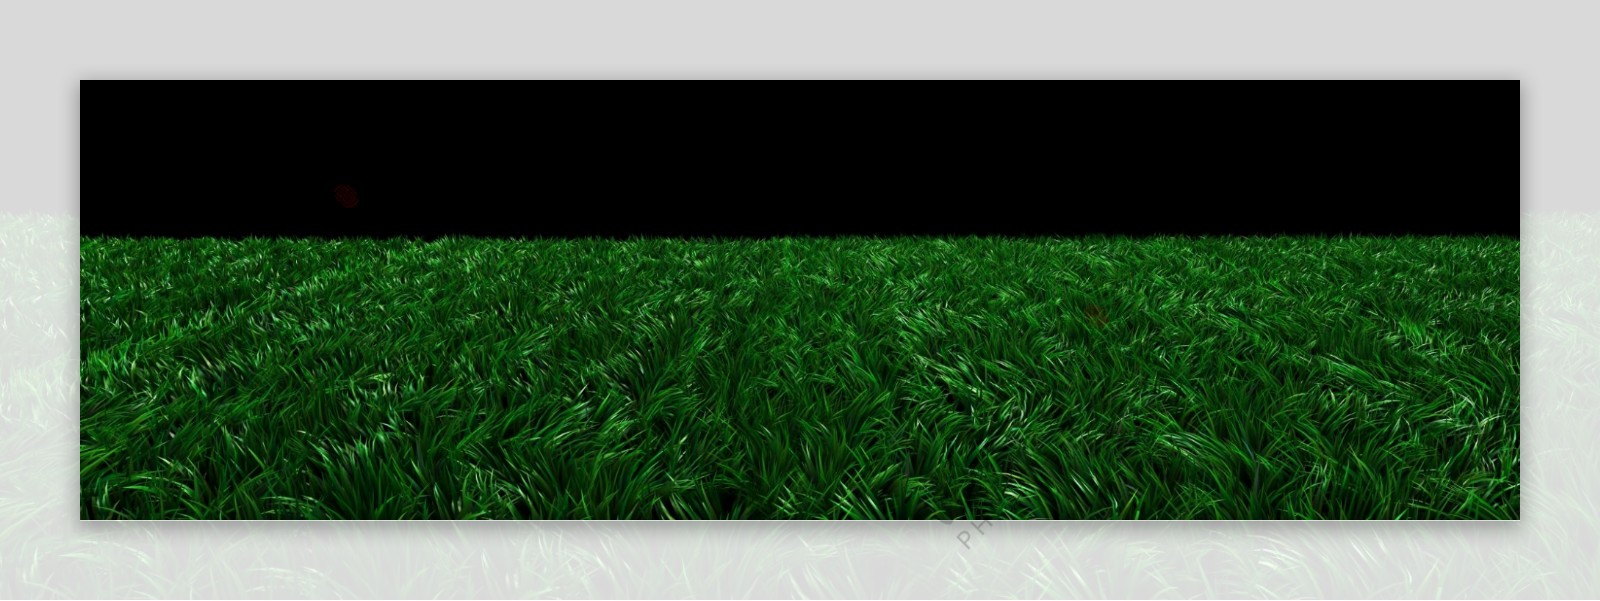 超宽高清3D草地素材图片